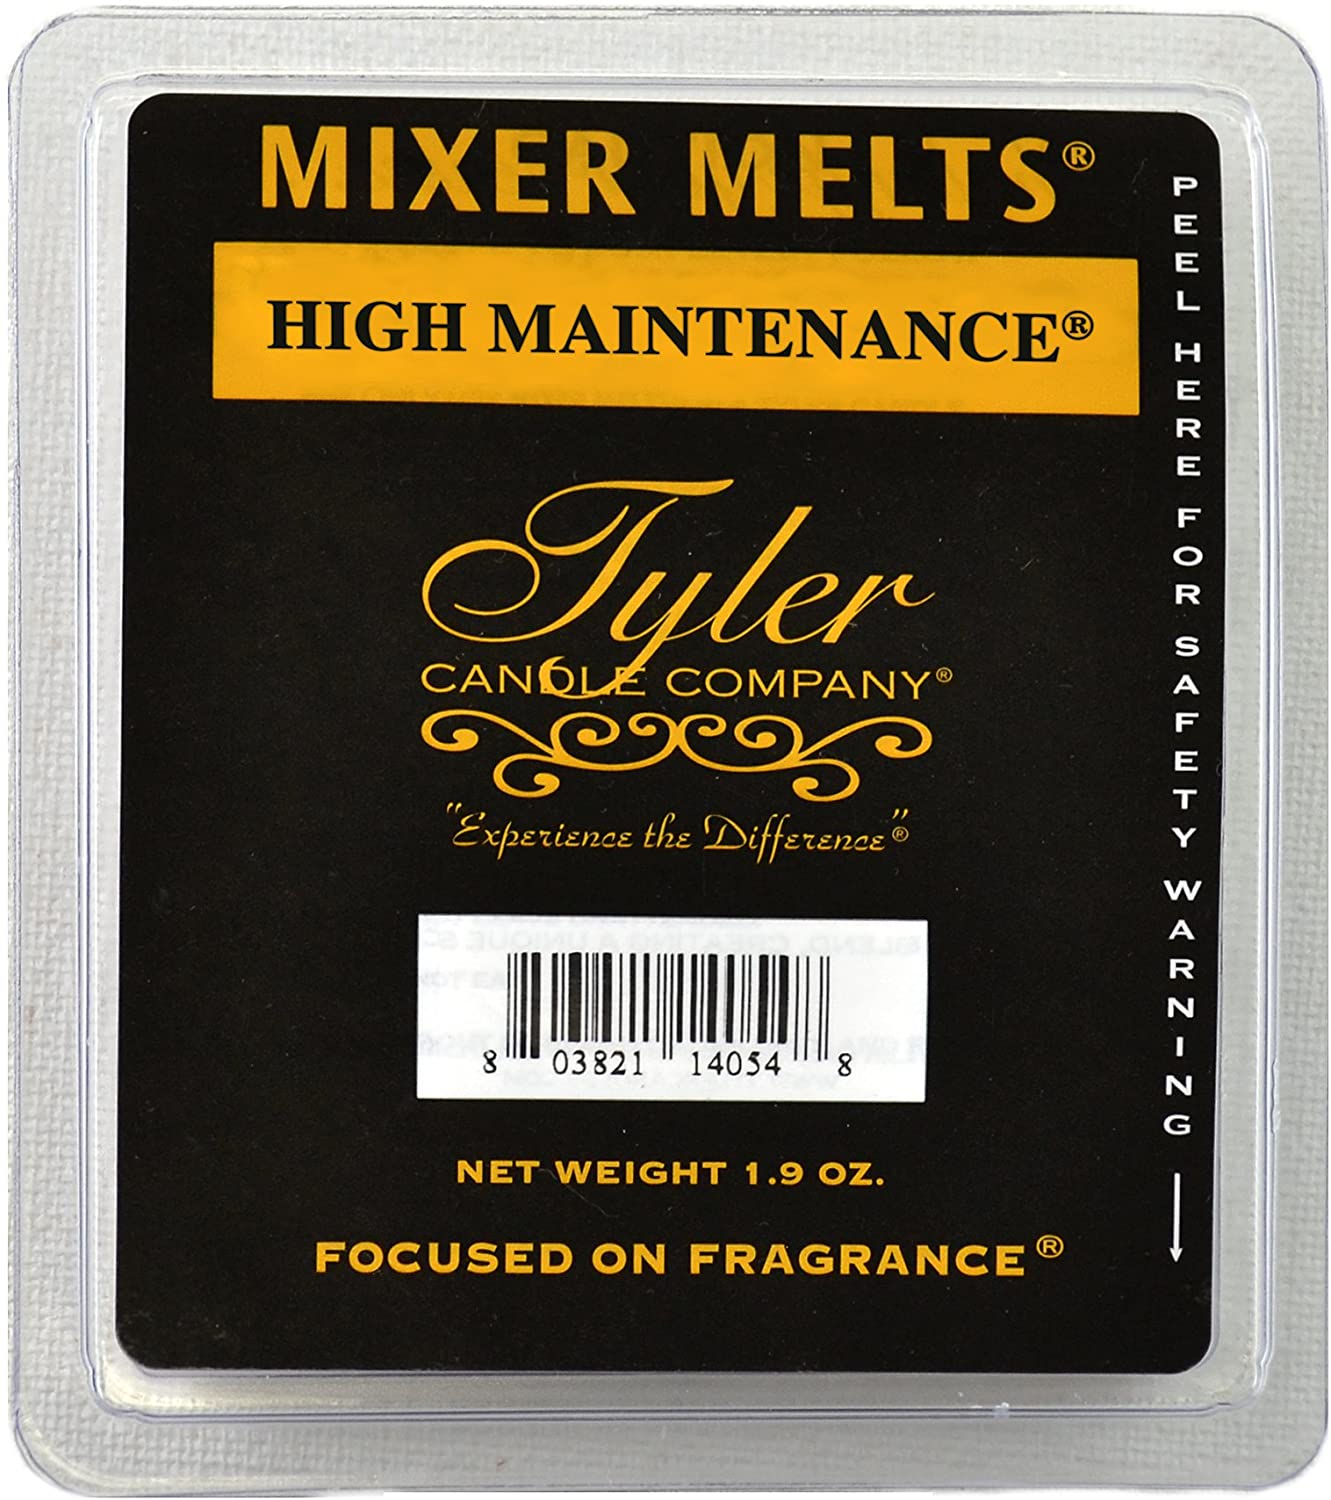 High Maintenance Mixer Melt